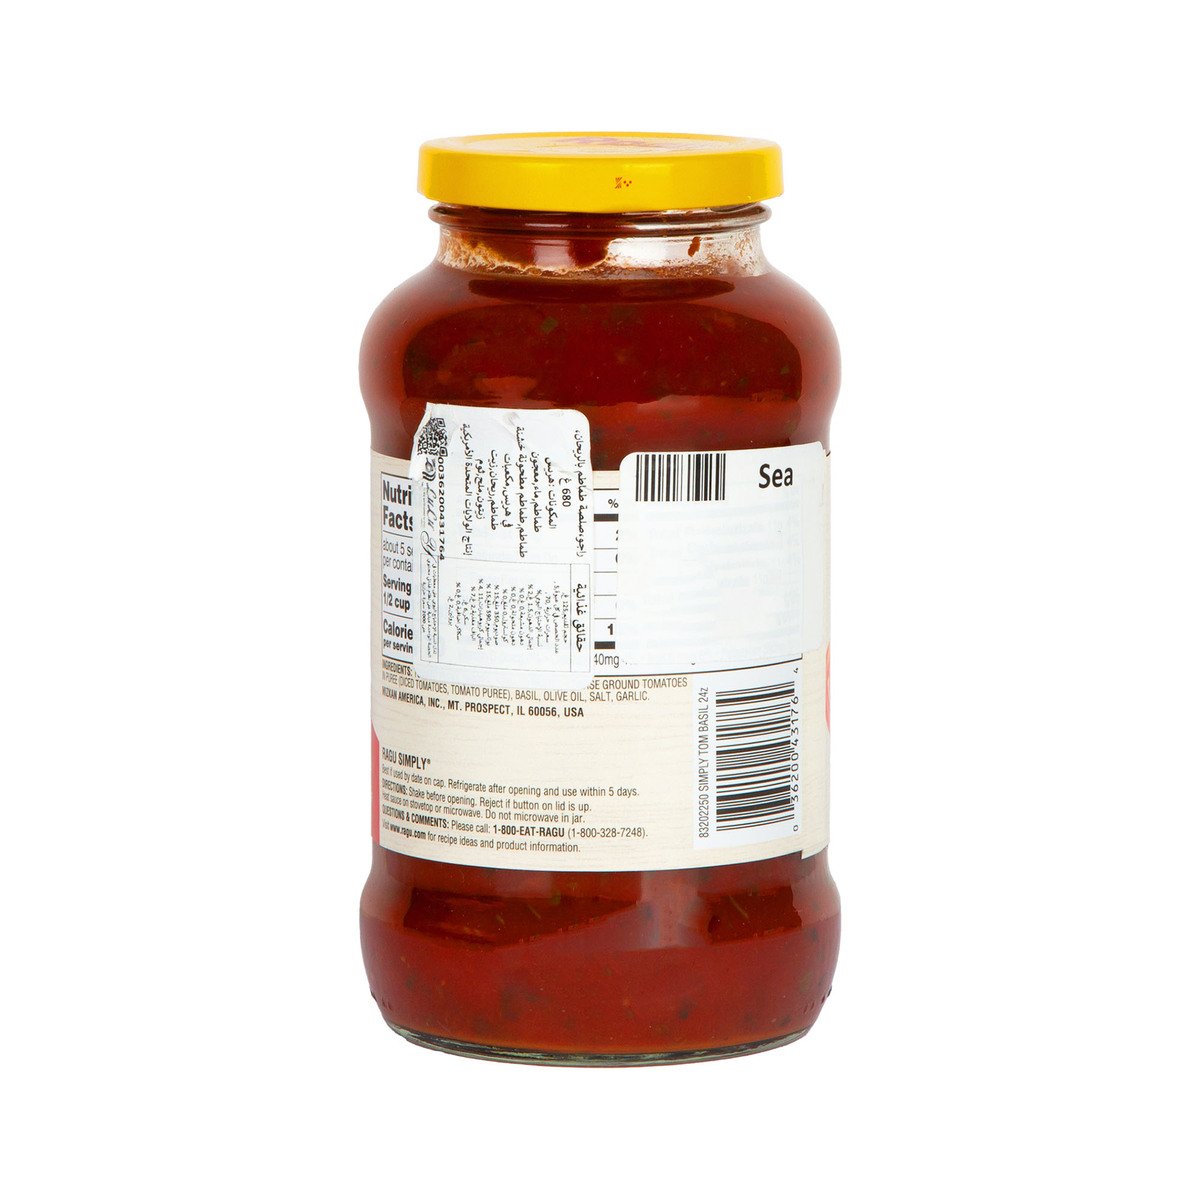 Ragu Simply Tomato Basil Sauce 680 g